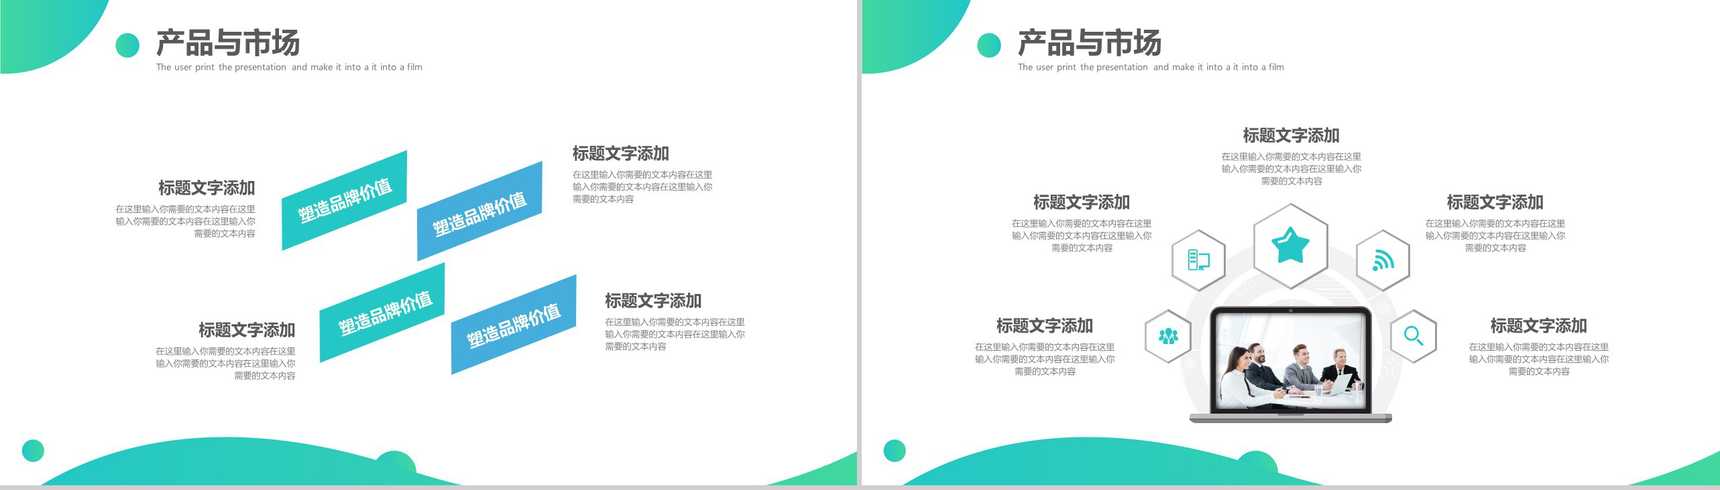 清新绿色简约风格企业文化管理理念宣传活动产品介绍PPT模板-8